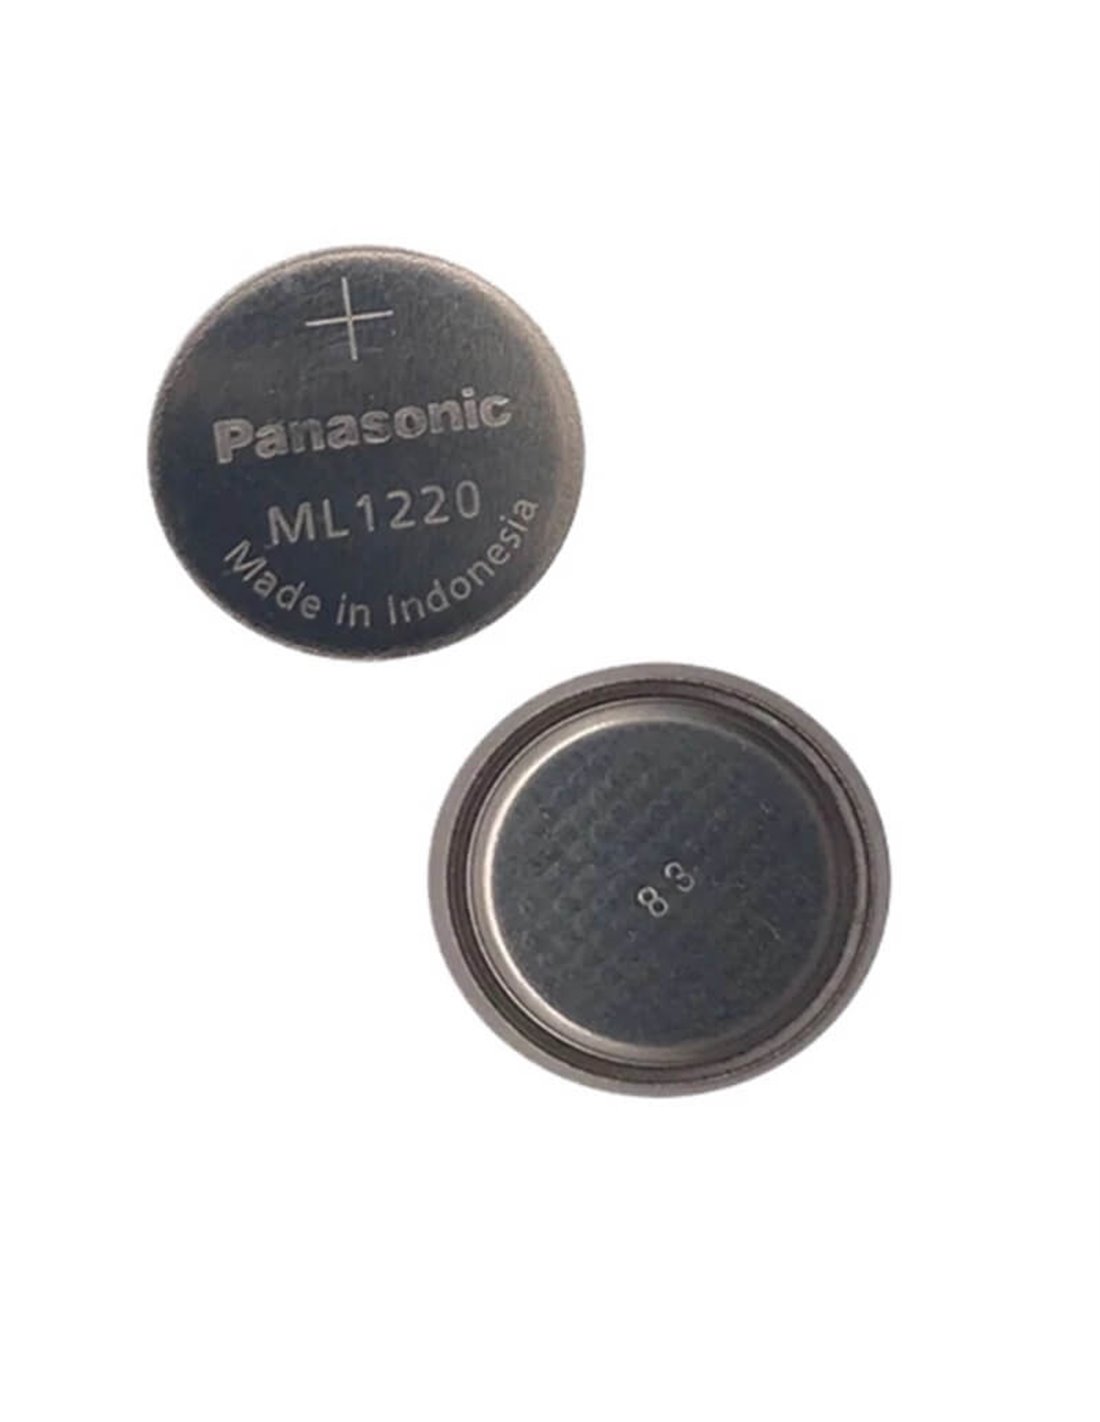 Battery for Panasonic Ml1220, Ml-1220 3V, 15mAh - 0.045Wh